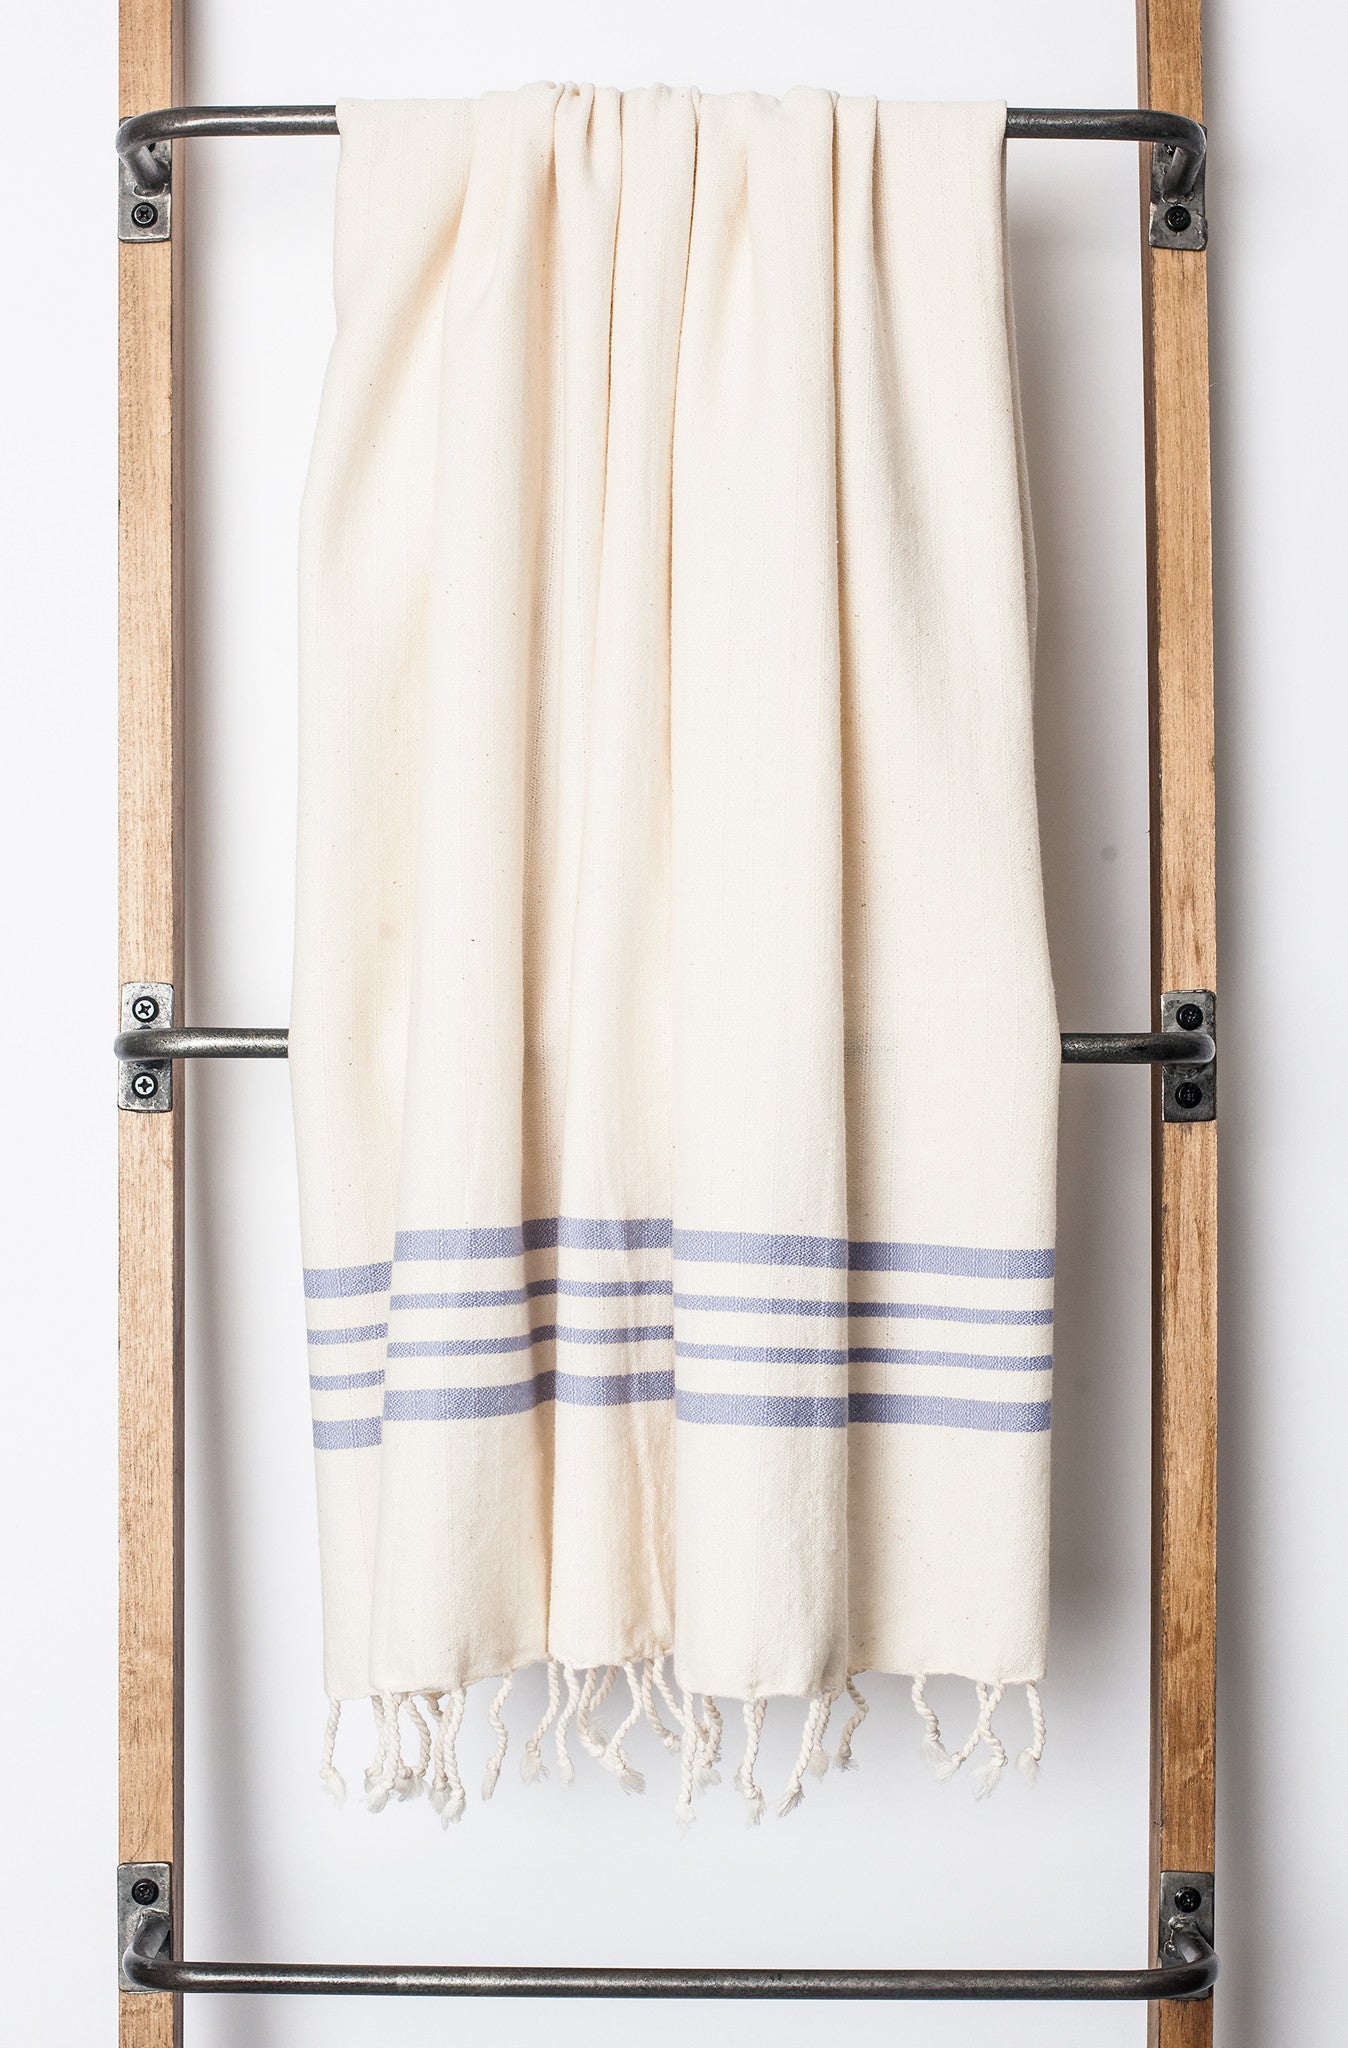 Aegean Ecru Color Background Turkish Bath Towel 39 x 70 Inches (Bath/Beach) / Green